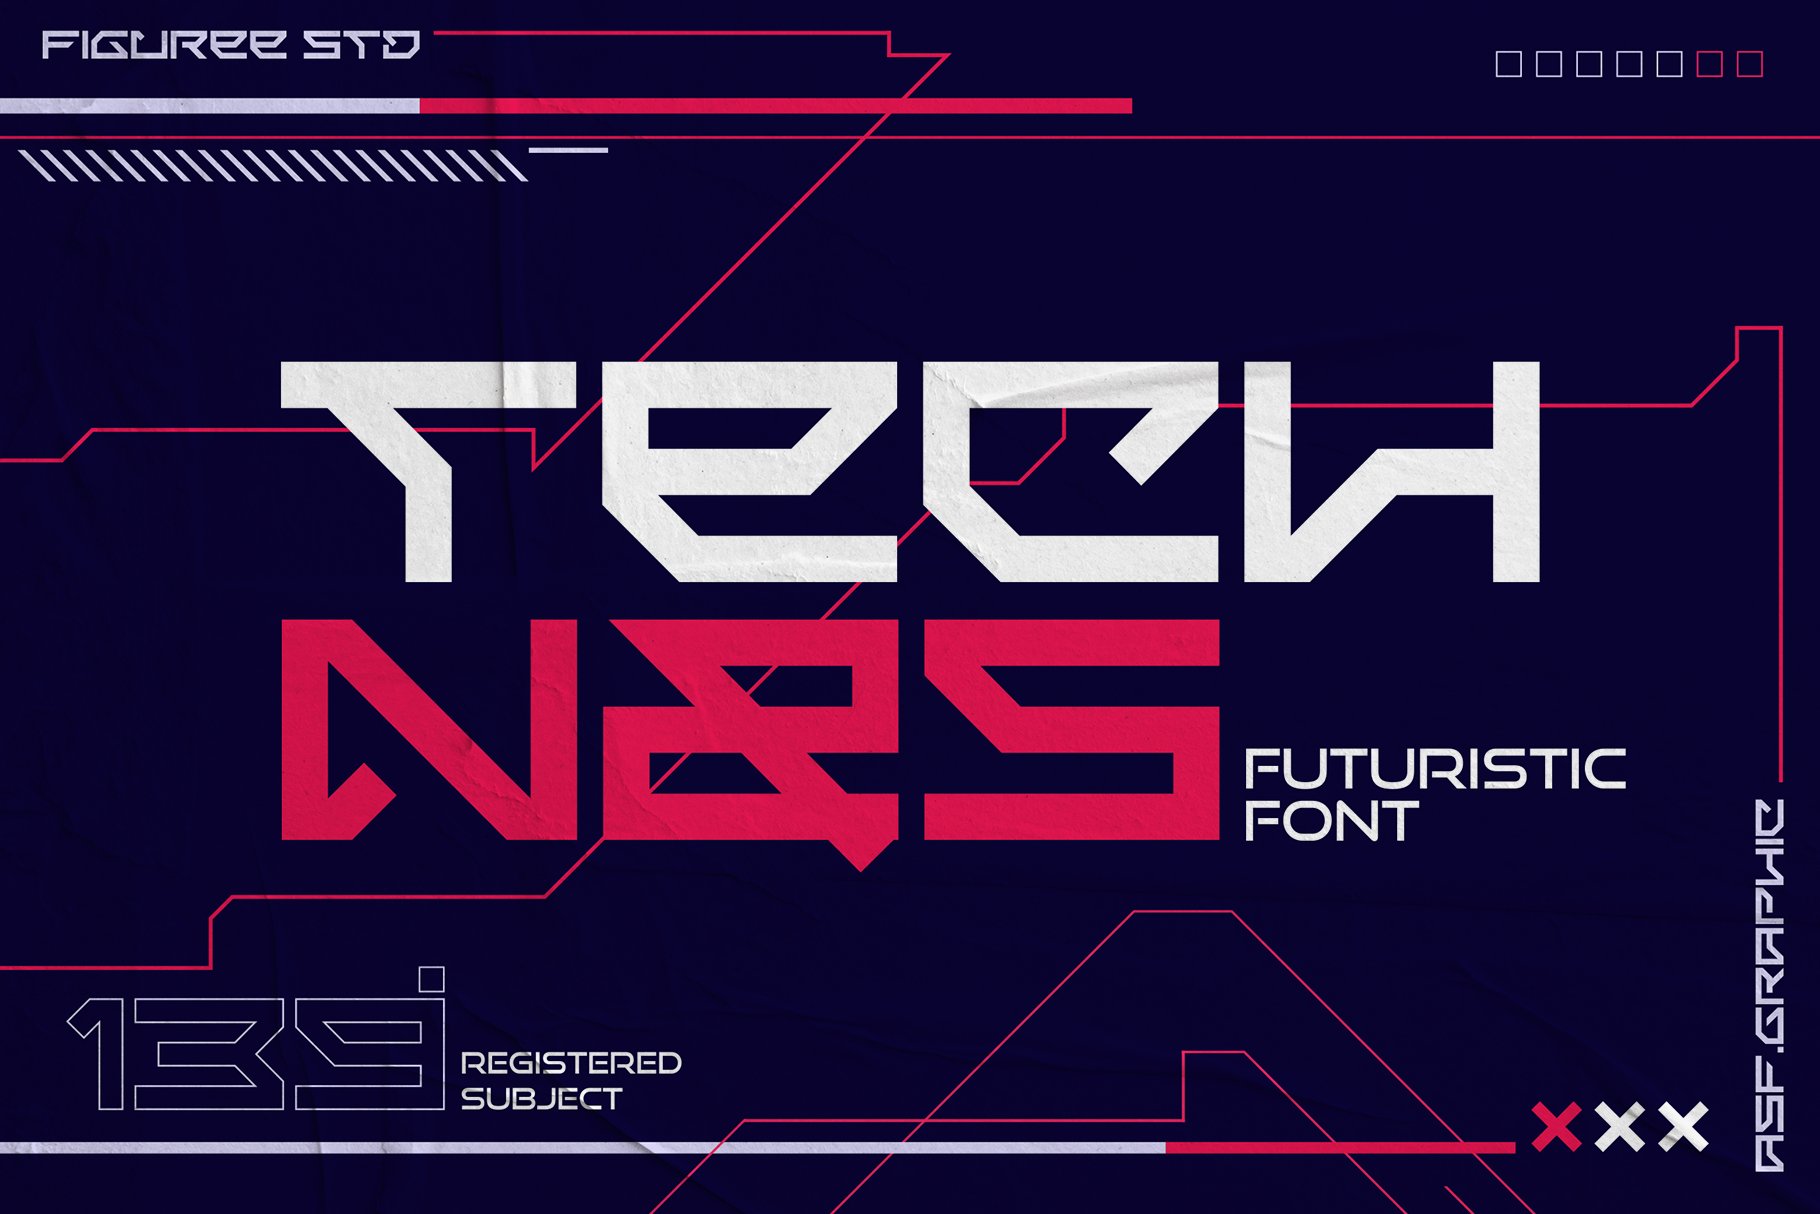 Technos - Futuristic Font cover image.